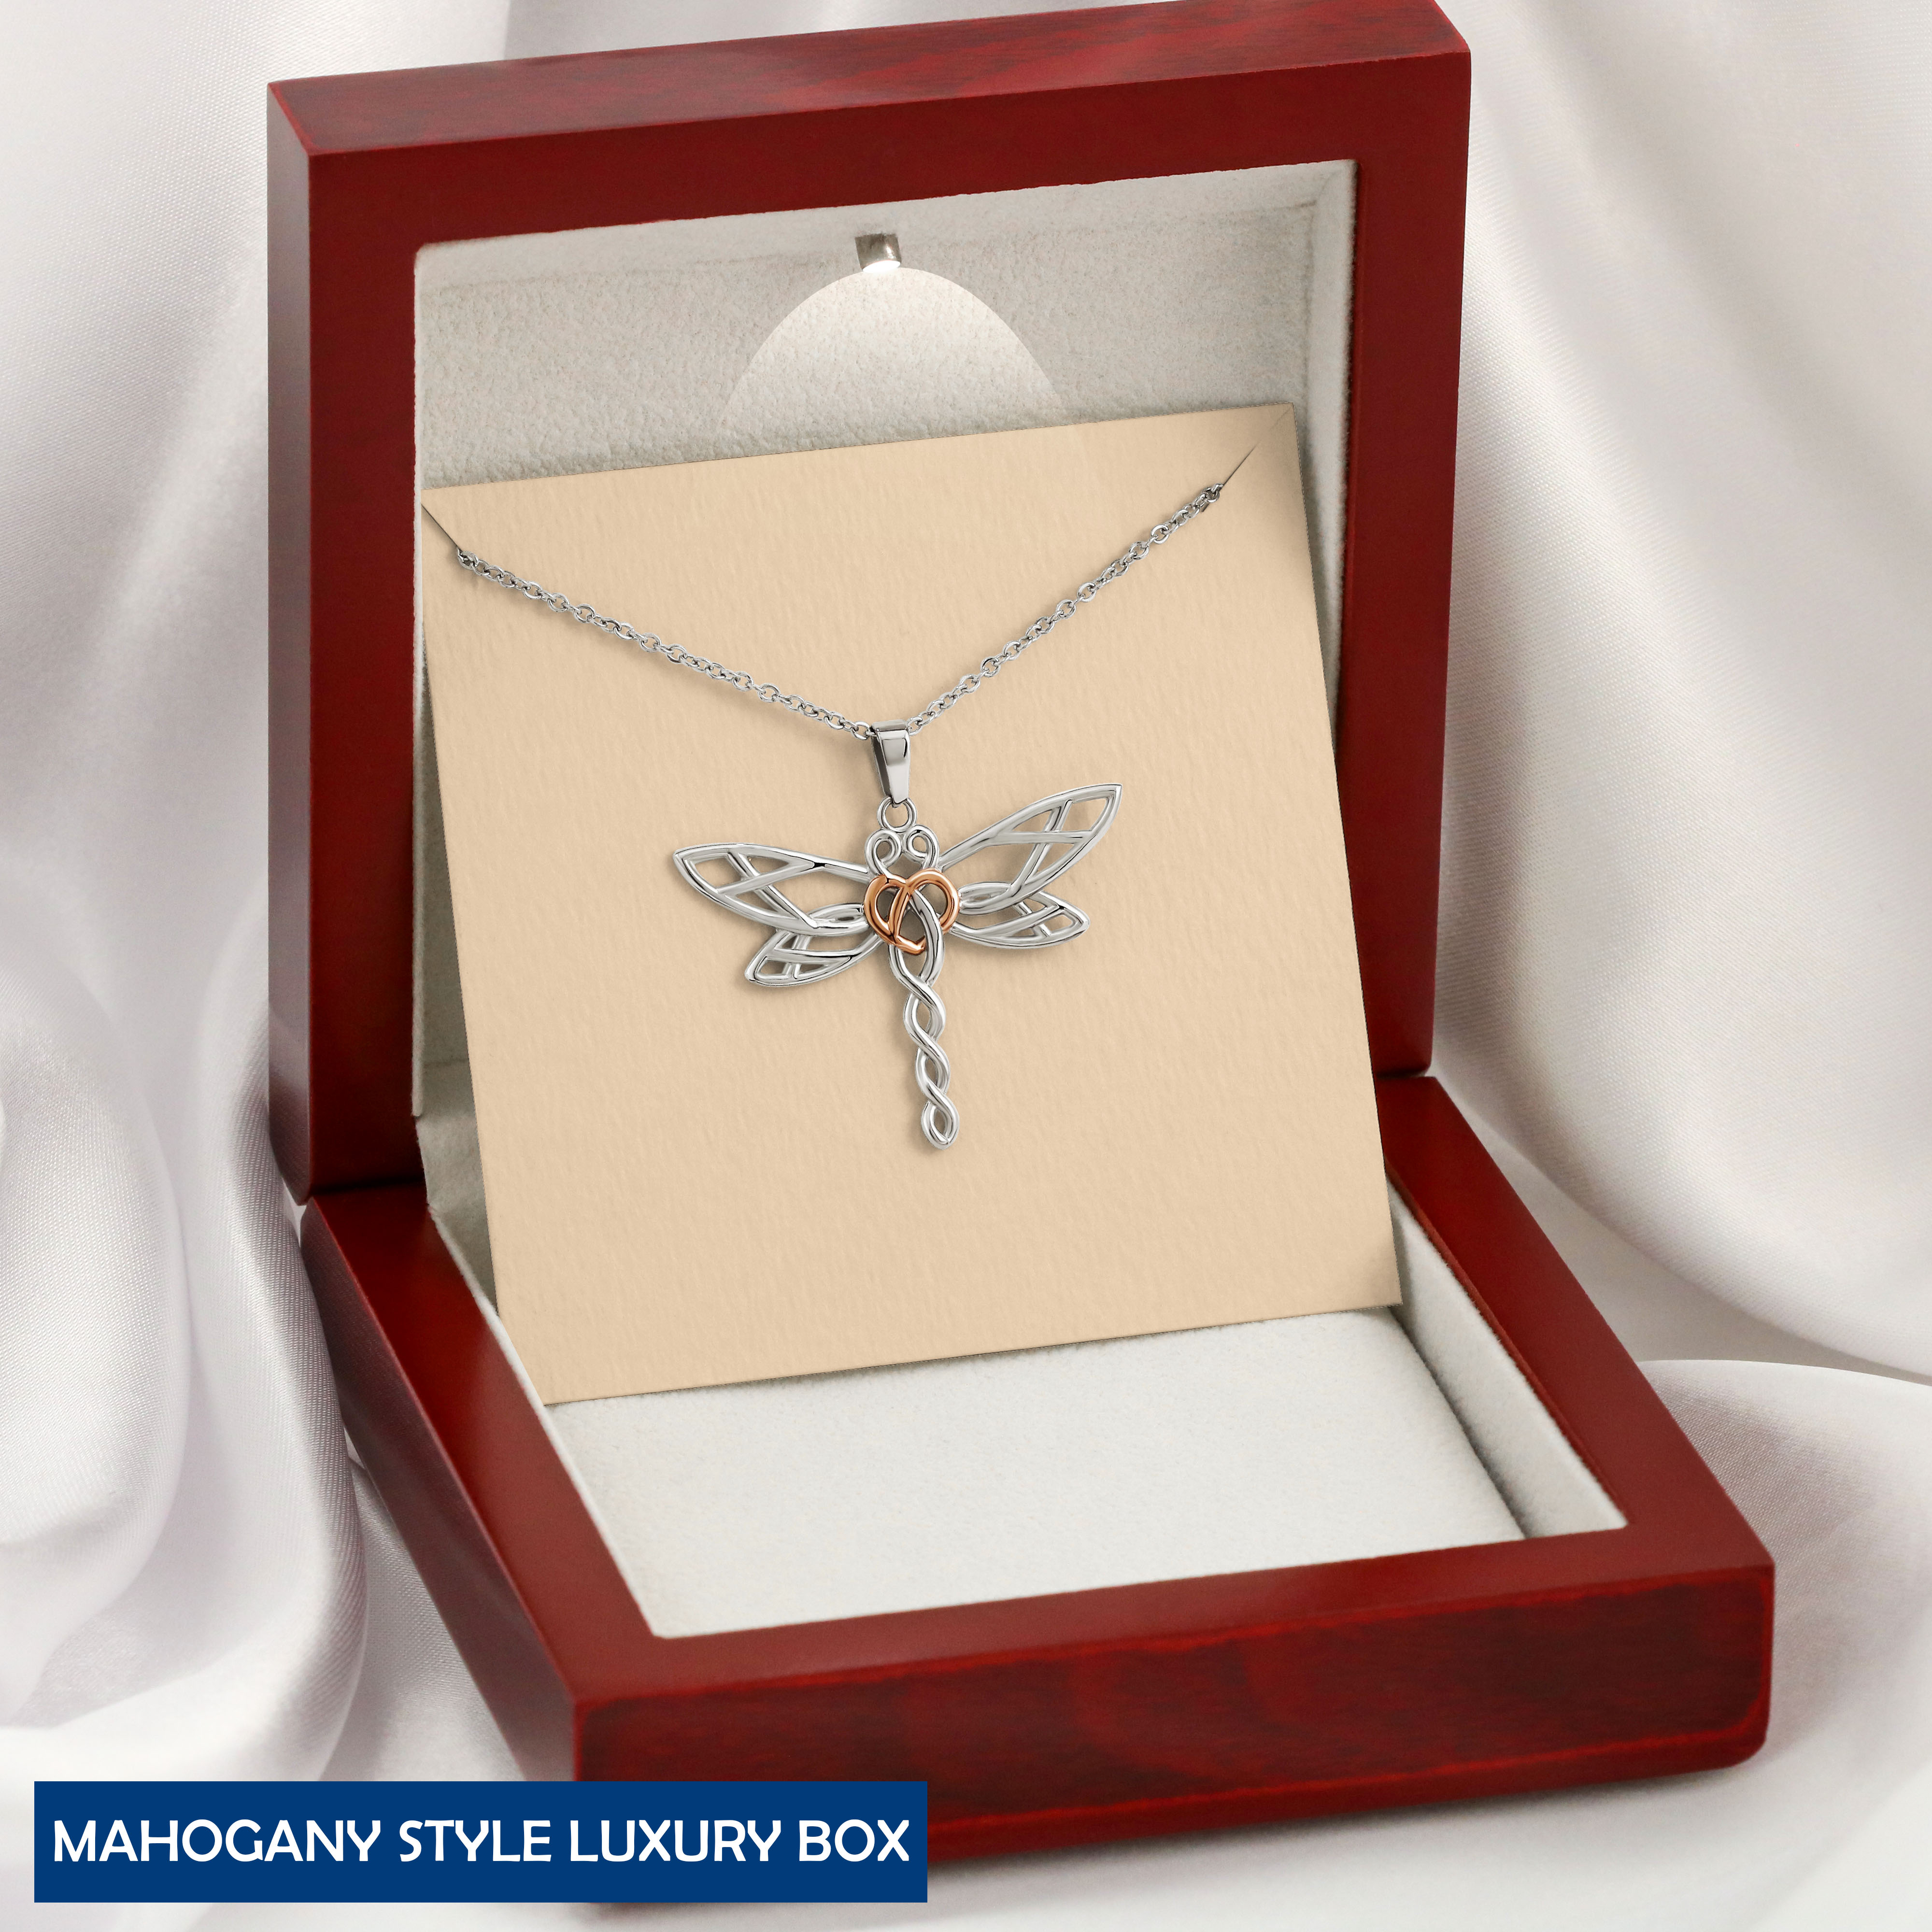 Mahogany Style Luxury Box